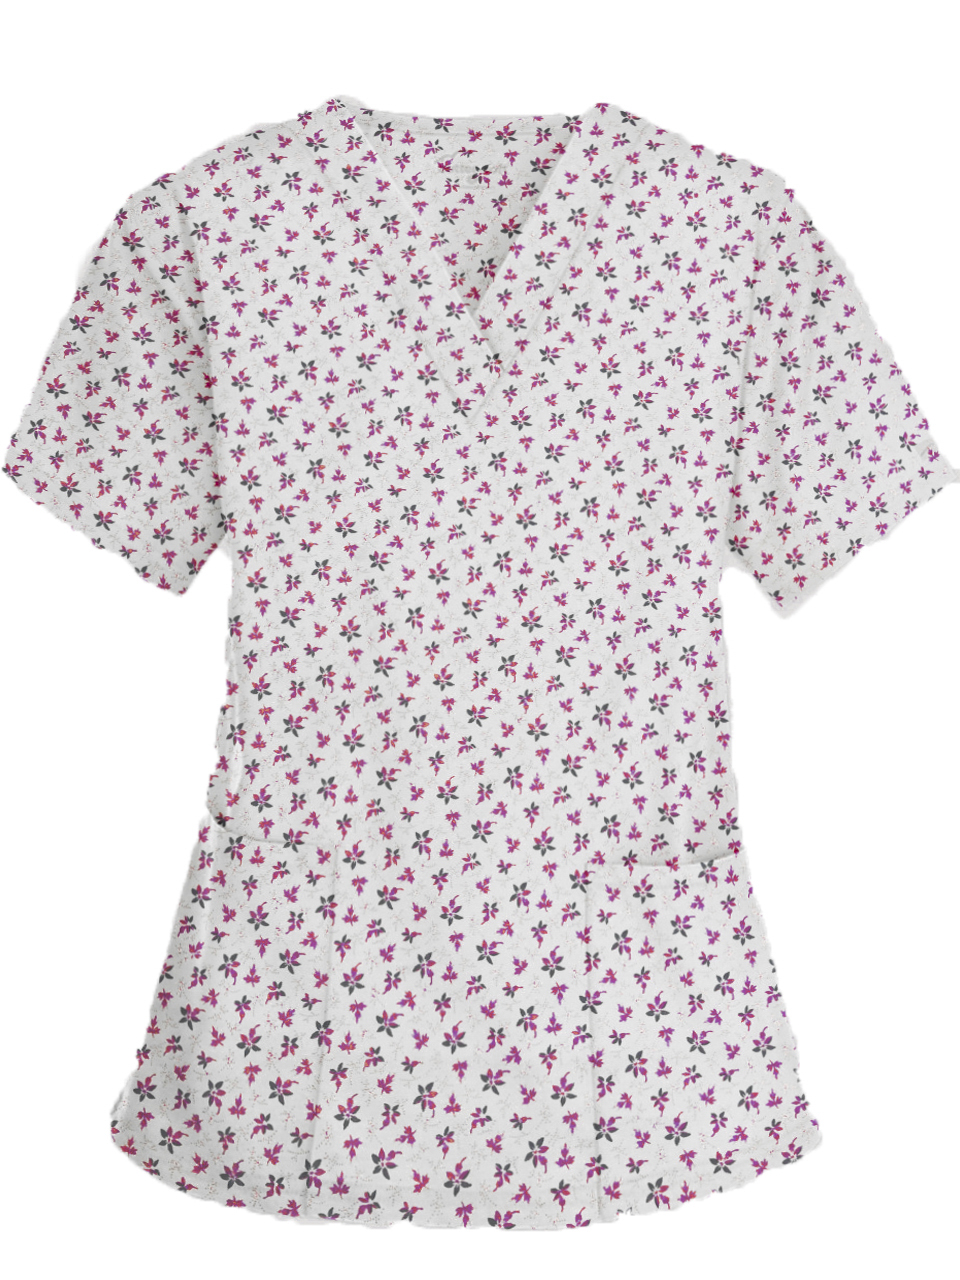 Top v neck 2 pocket half sleeve in Pink And Black Flower Print